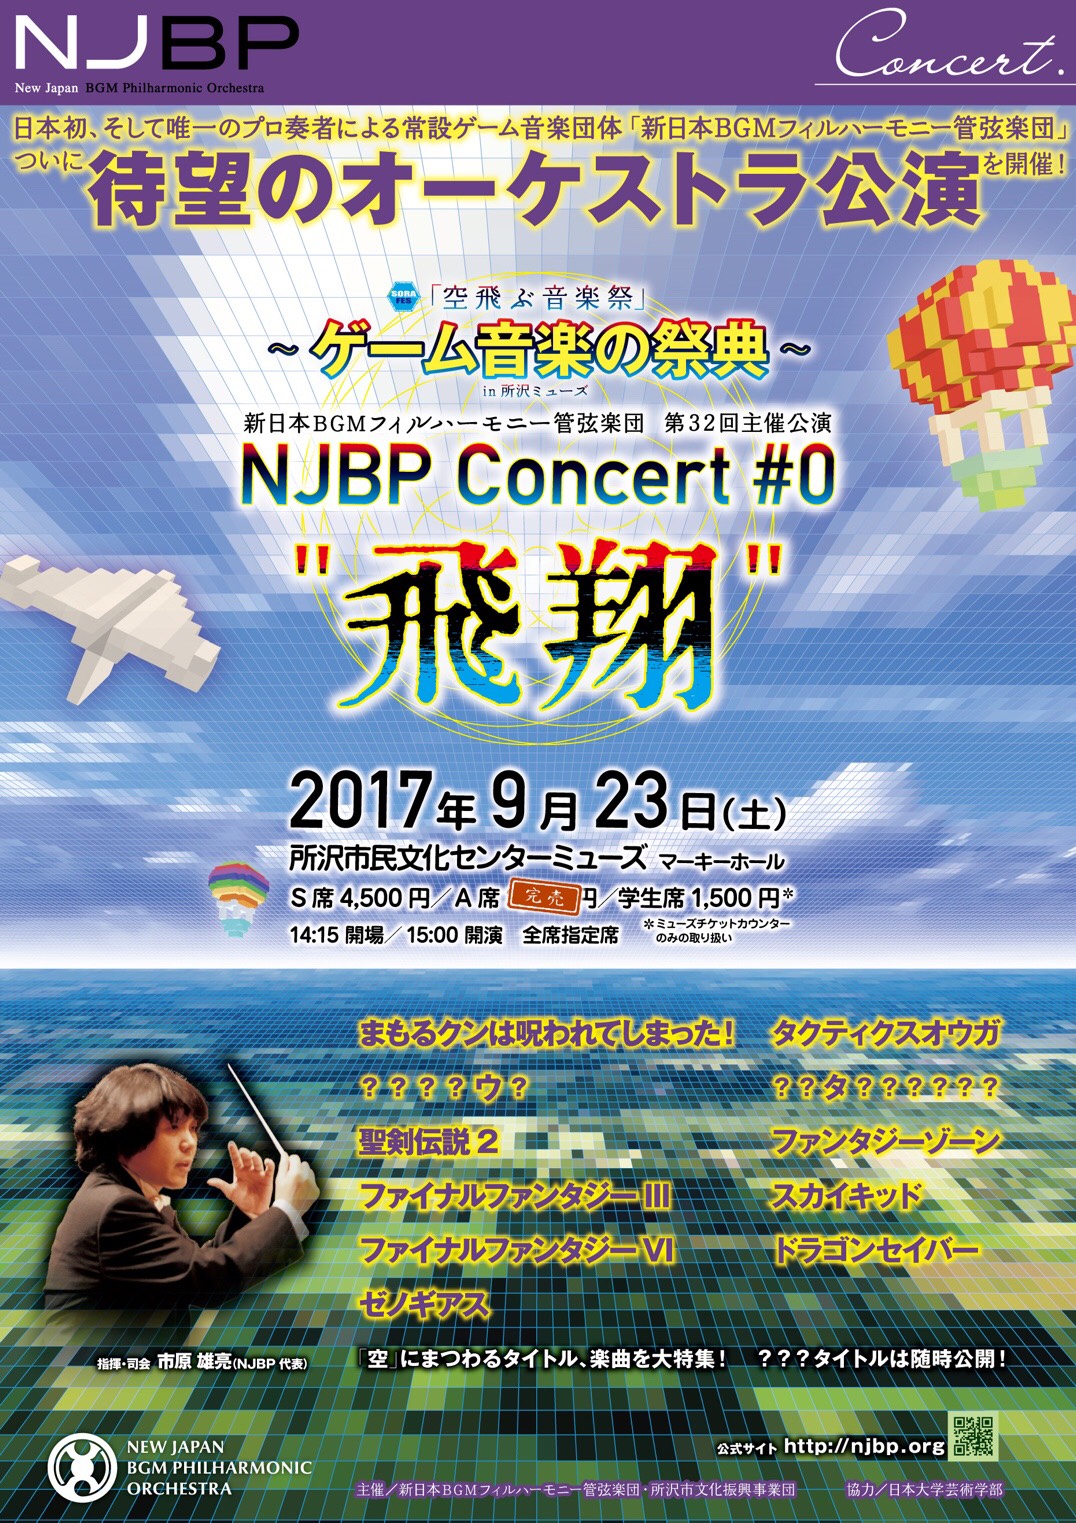 コンサート情報 | 新日本BGMフィルハーモニー管弦楽団